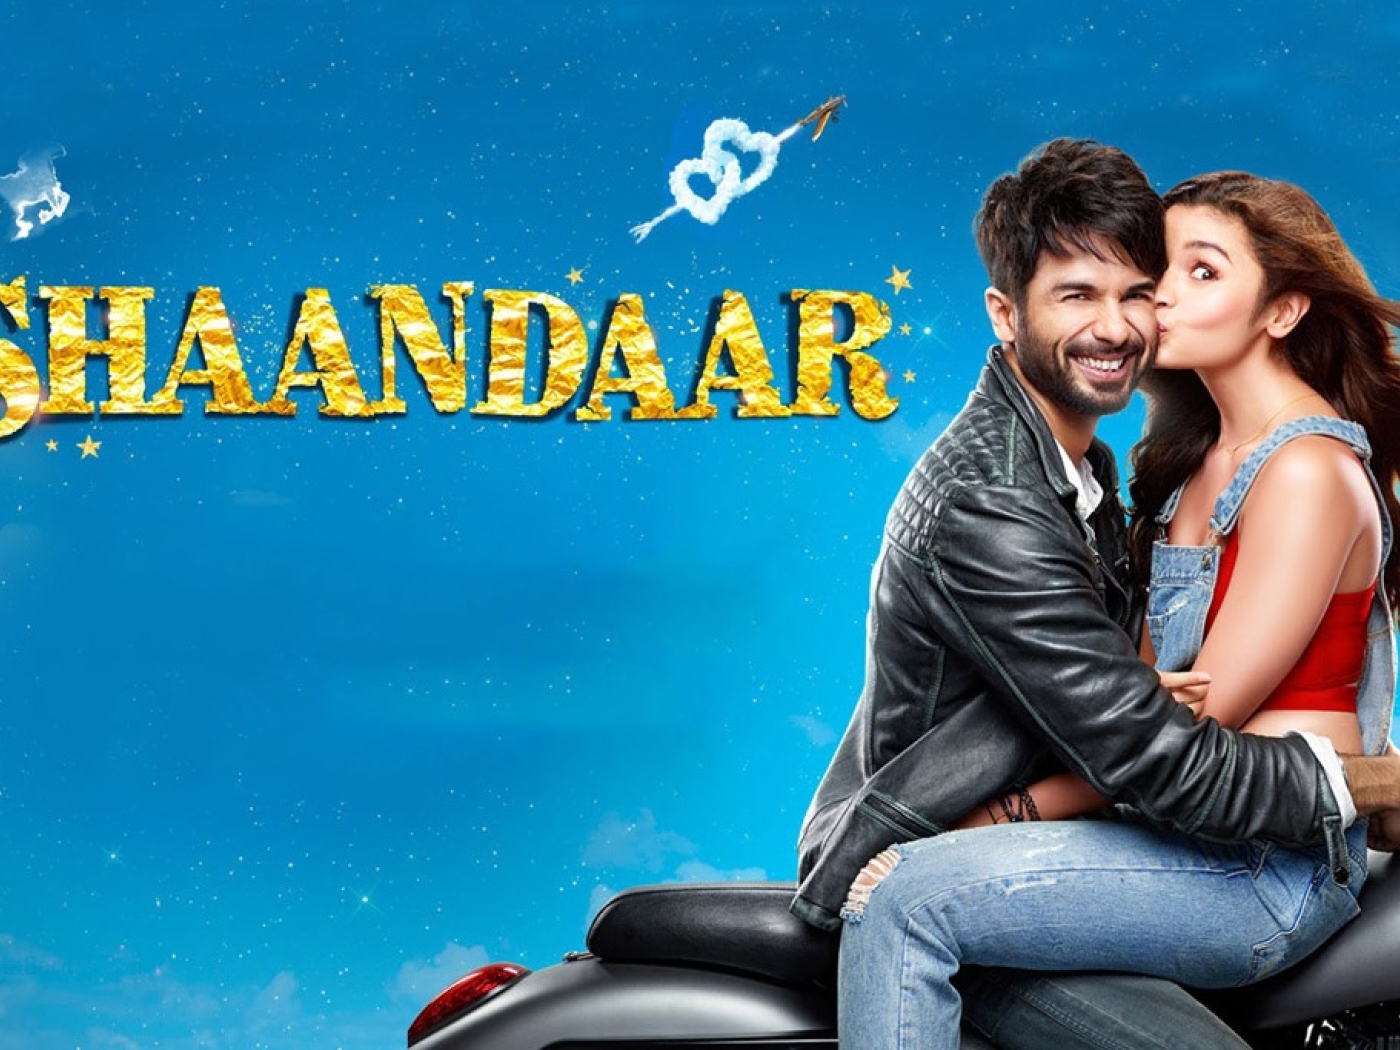 shaandaar movie full download